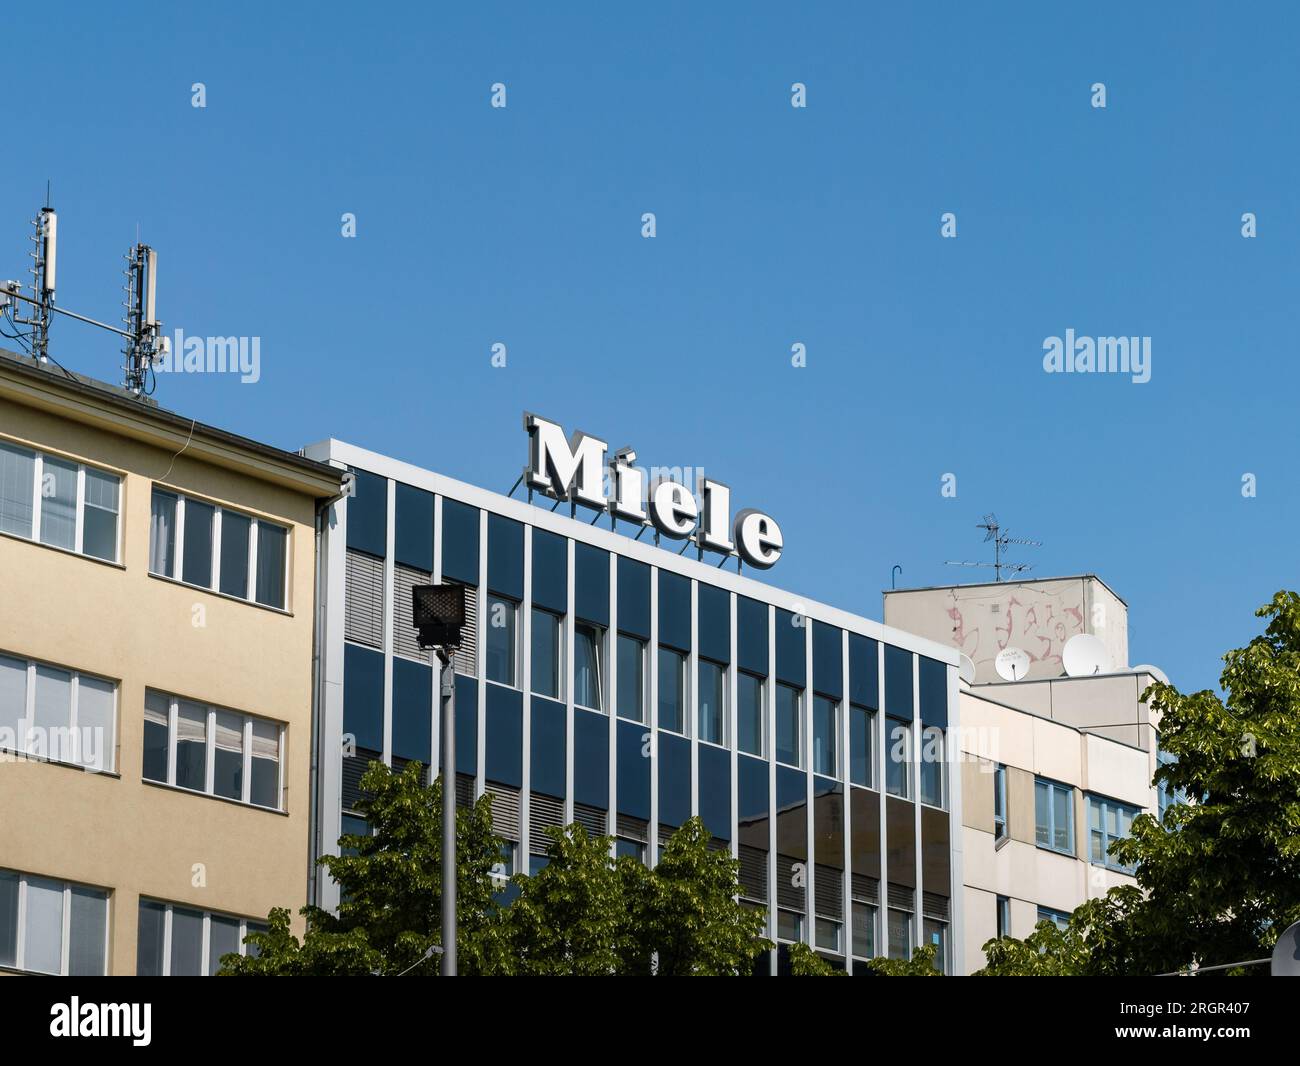 Logo Miele sur un bâtiment de la ville. Signe de la célèbre marque allemande pour les appareils ménagers comme les machines à laver, lave-vaisselle et autres produits. Banque D'Images